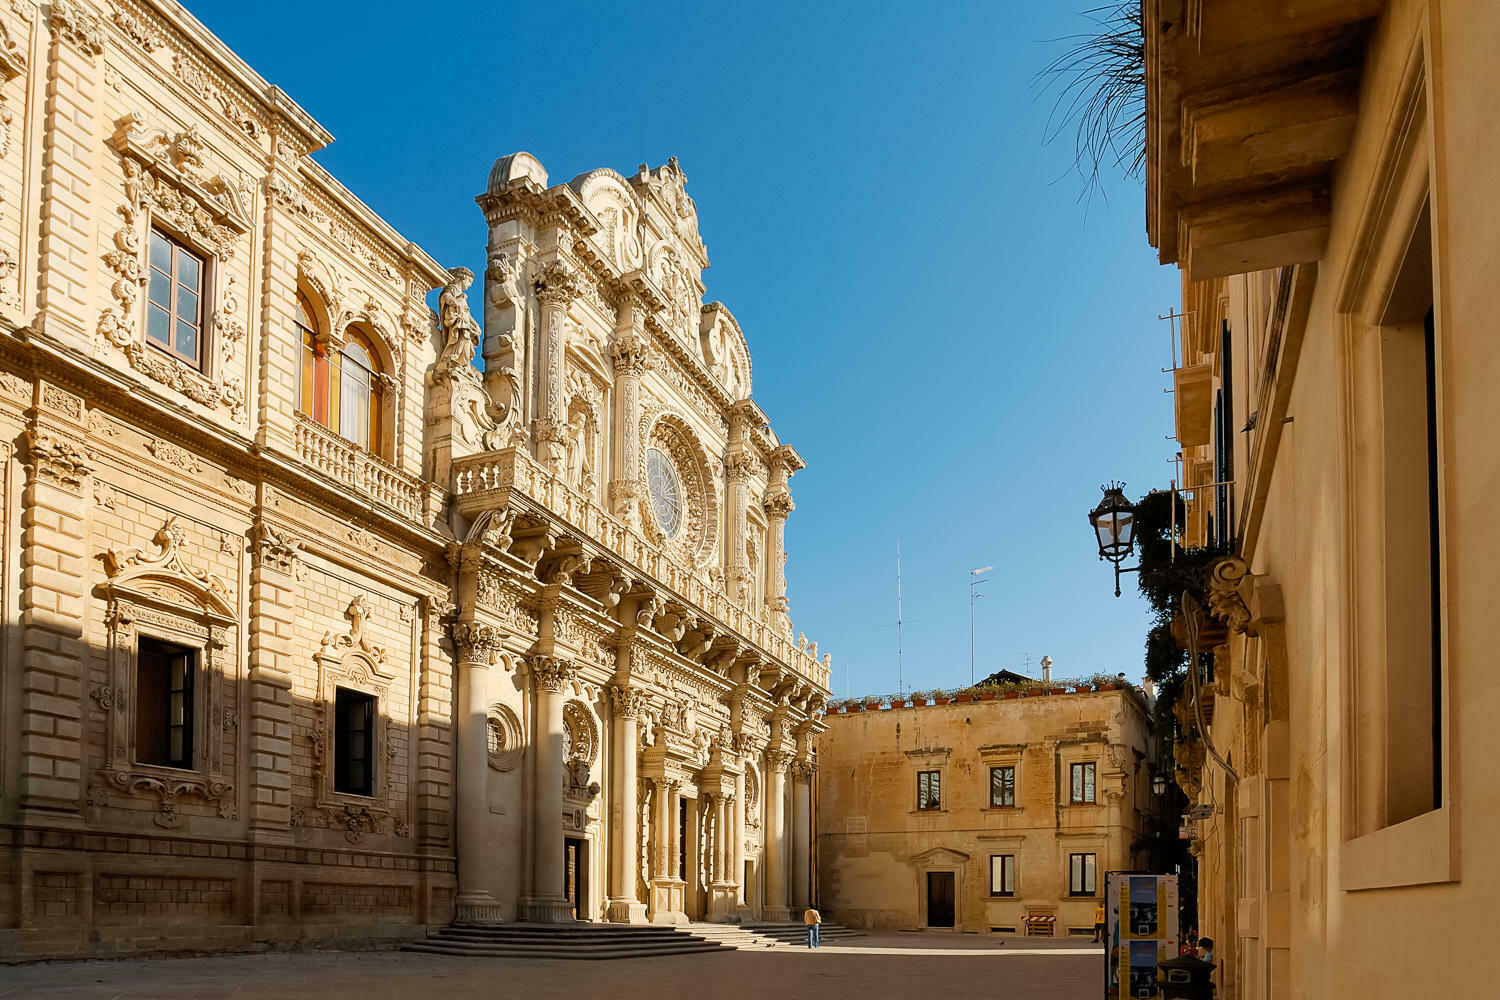 Lecce historic center - Santa Croce church